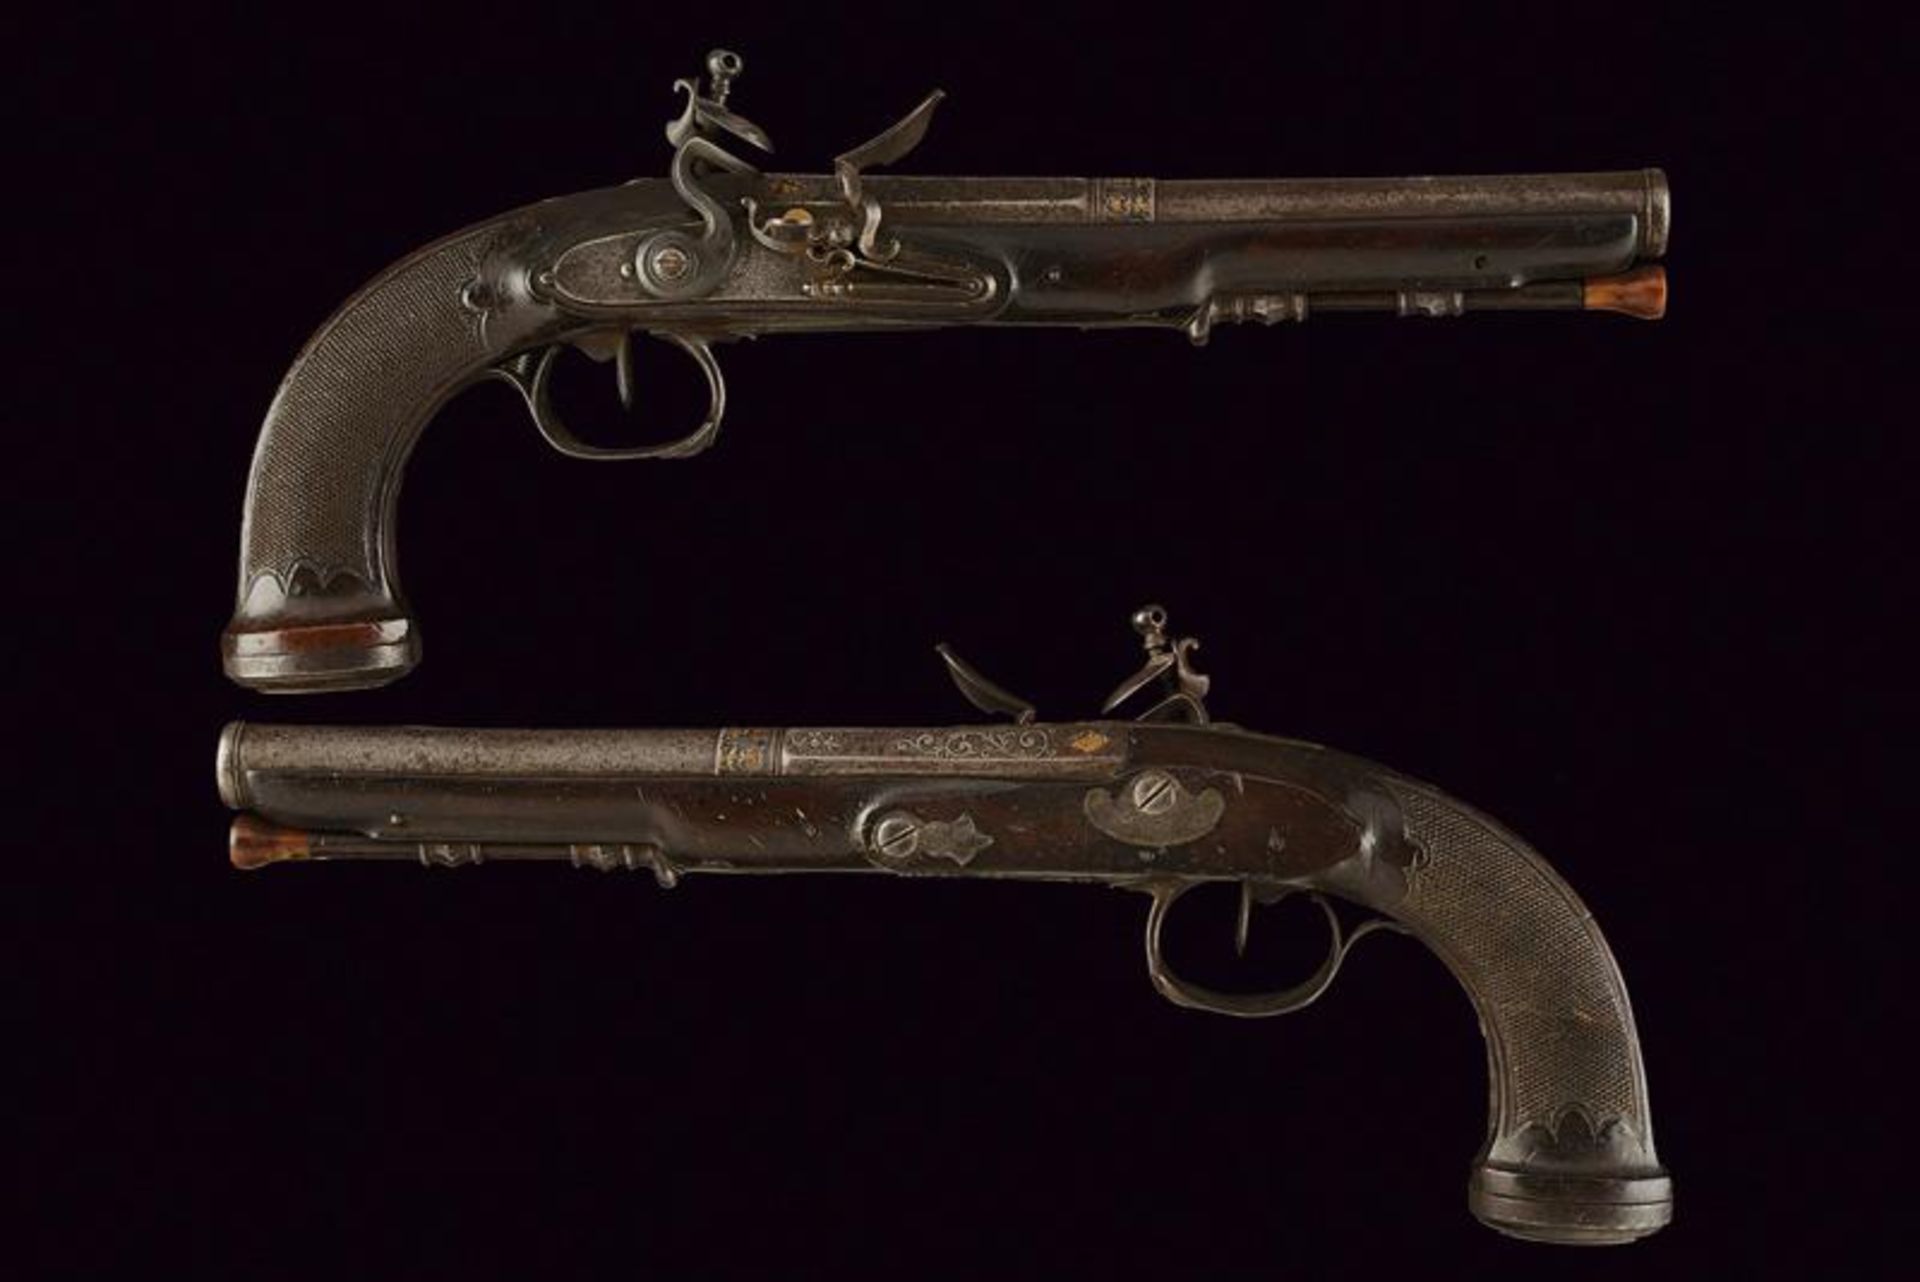 A fine pair of officer's flintlock pistols